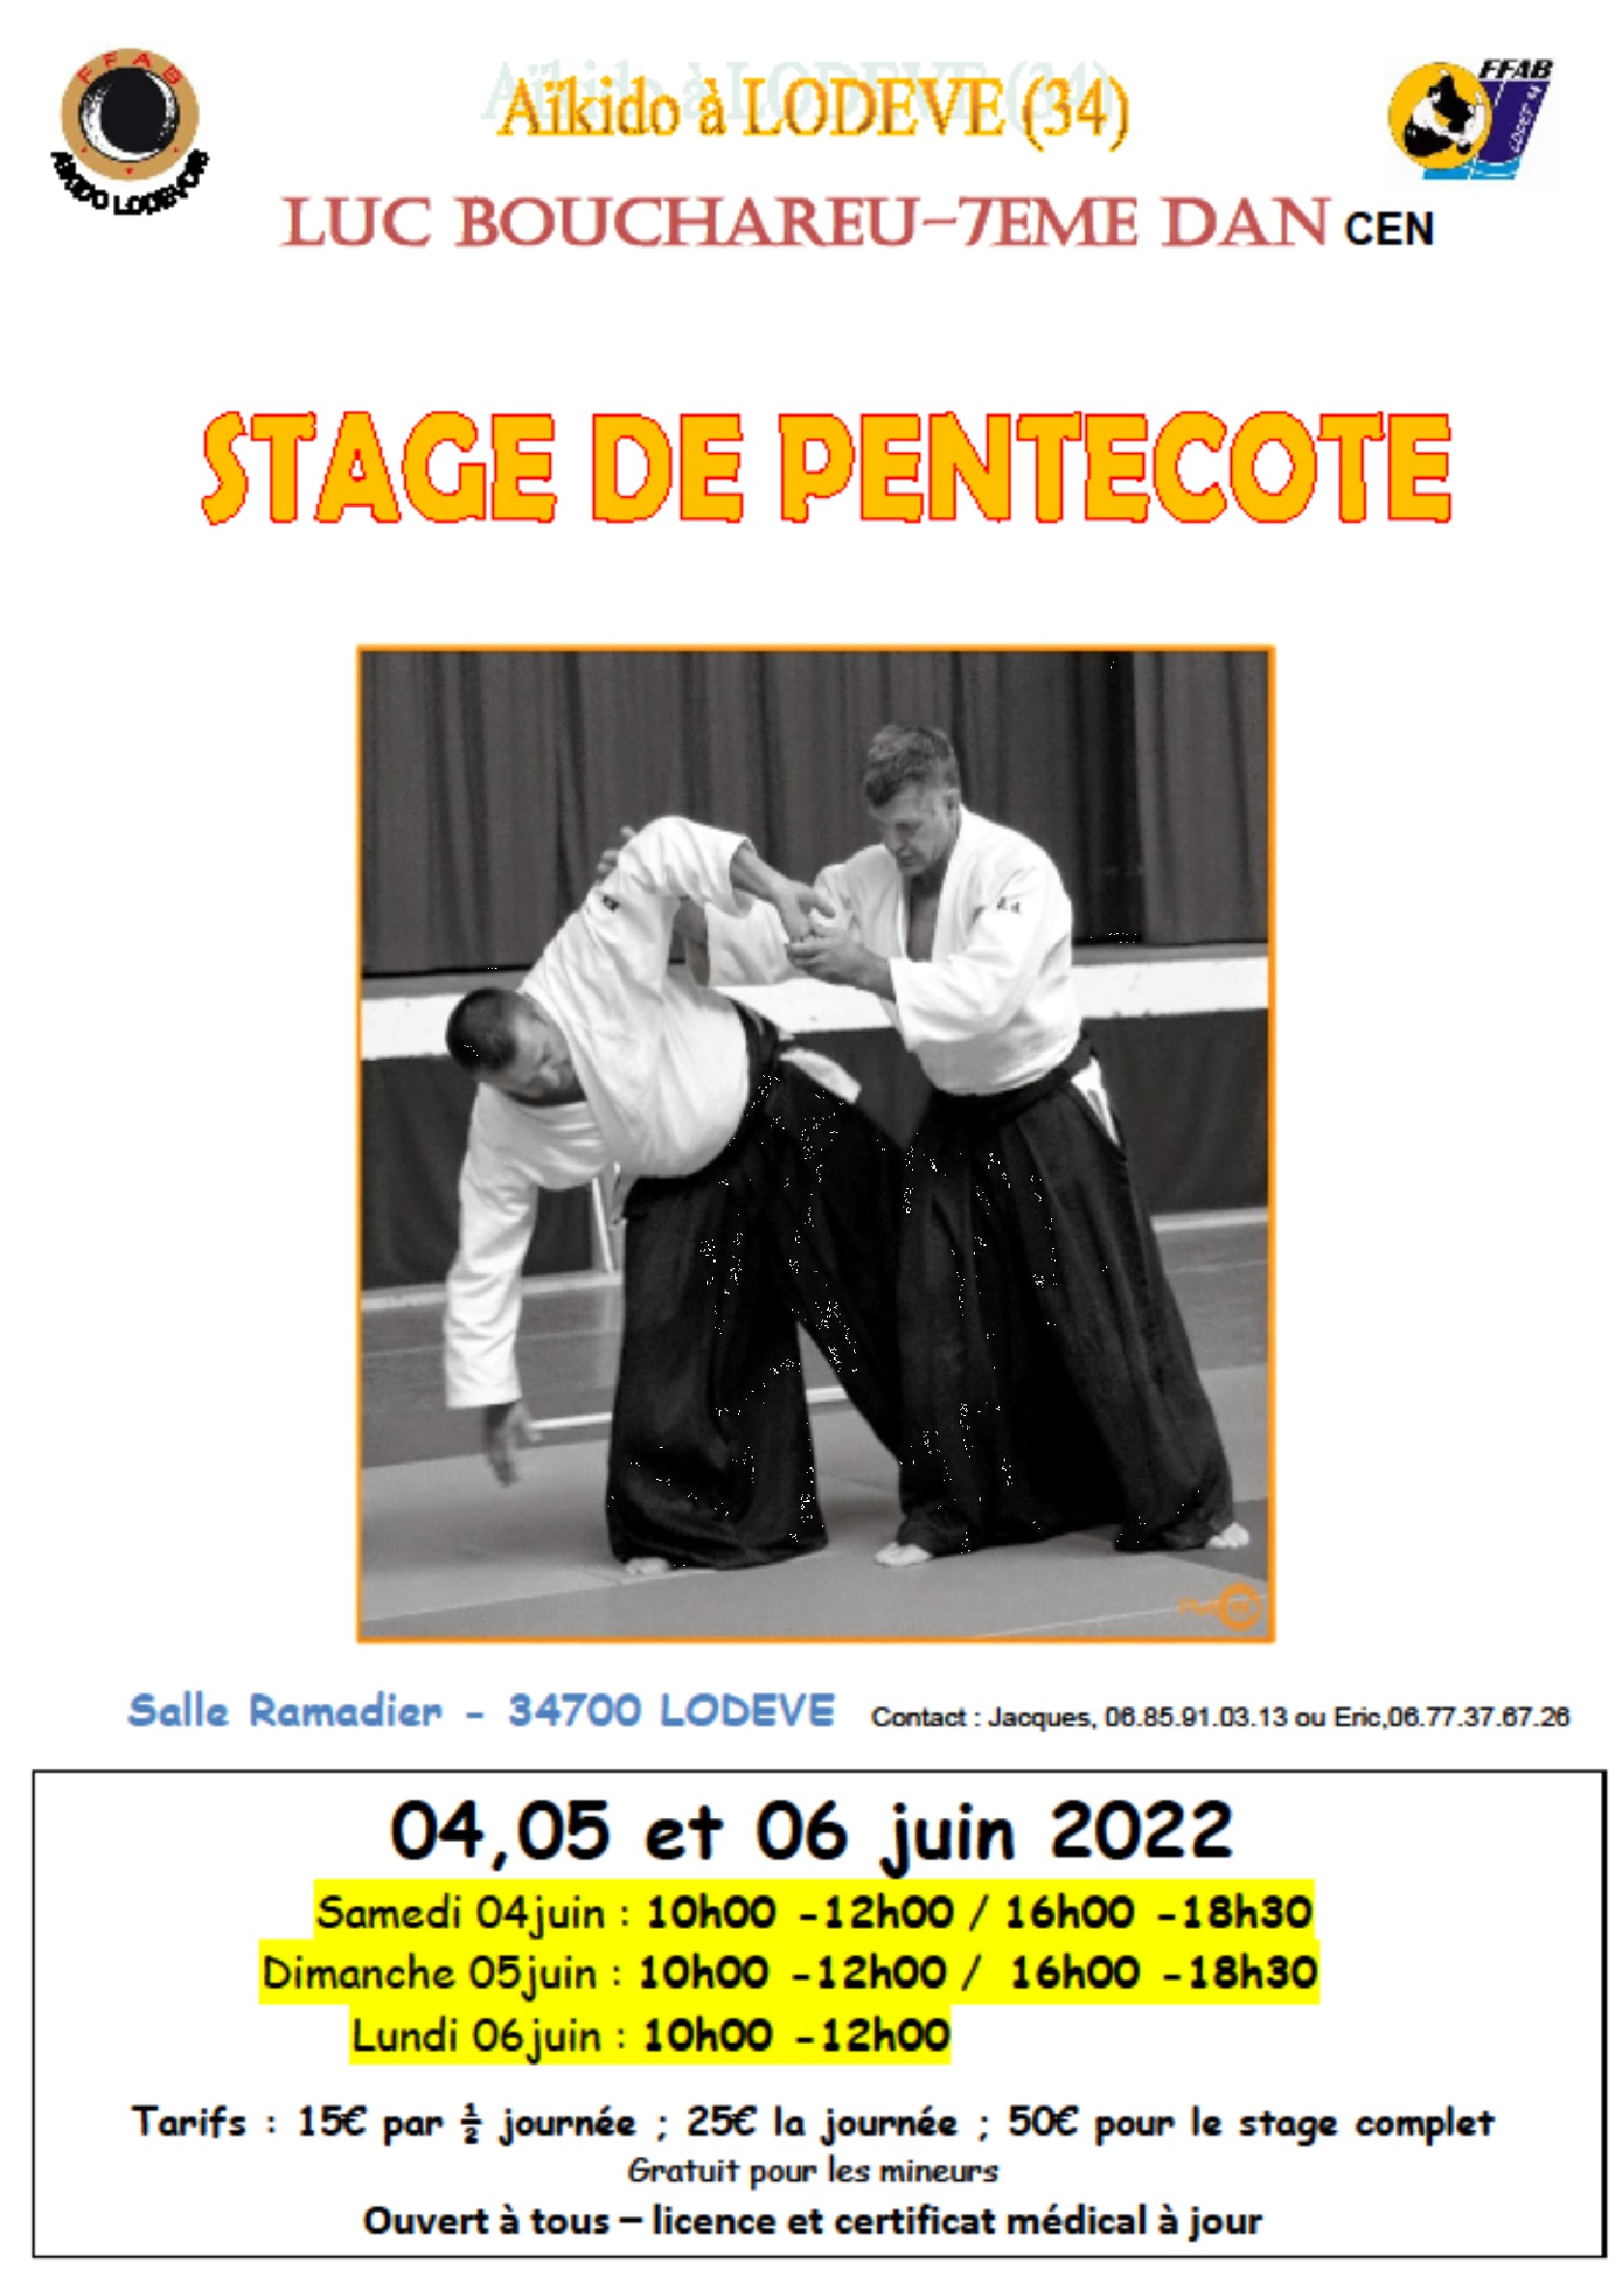 220604-05-06 Affiche stage Pentecôte Lodève Luc Bouchareu.jpg - 447,41 kB